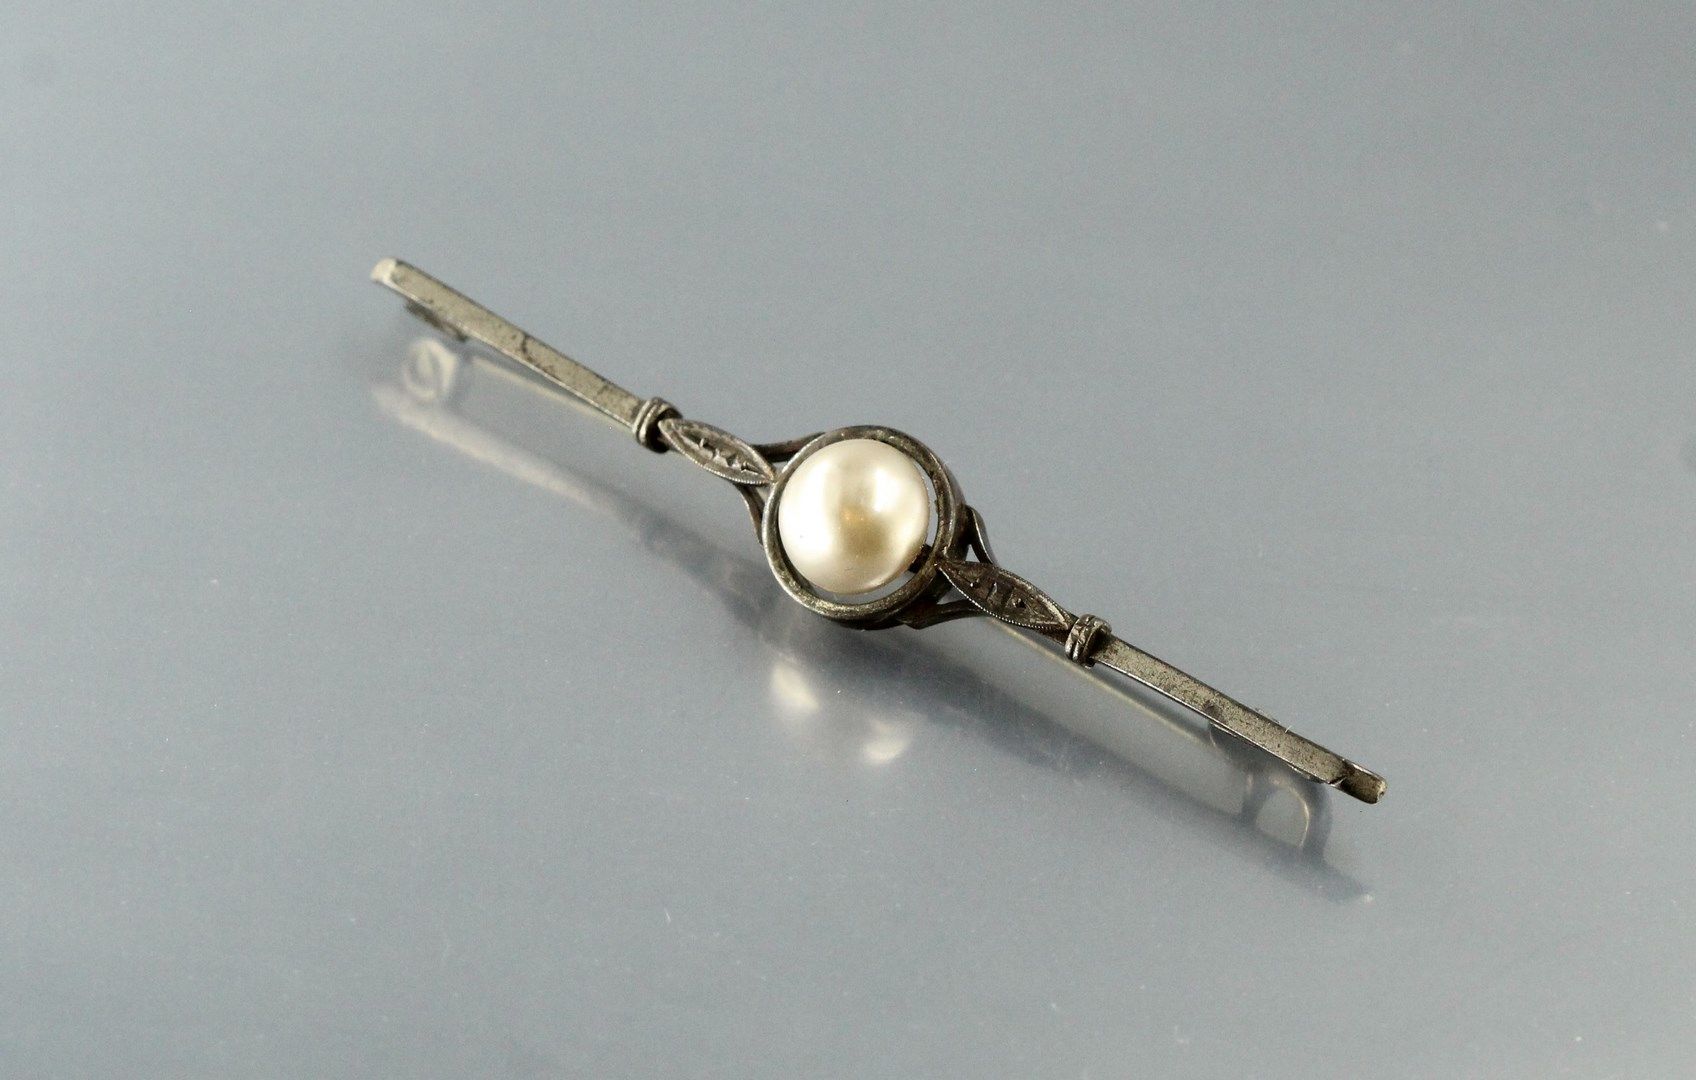 Null Spilla barretta in argento (Cinghiale) con una perla barocca. Circa 1930.

&hellip;